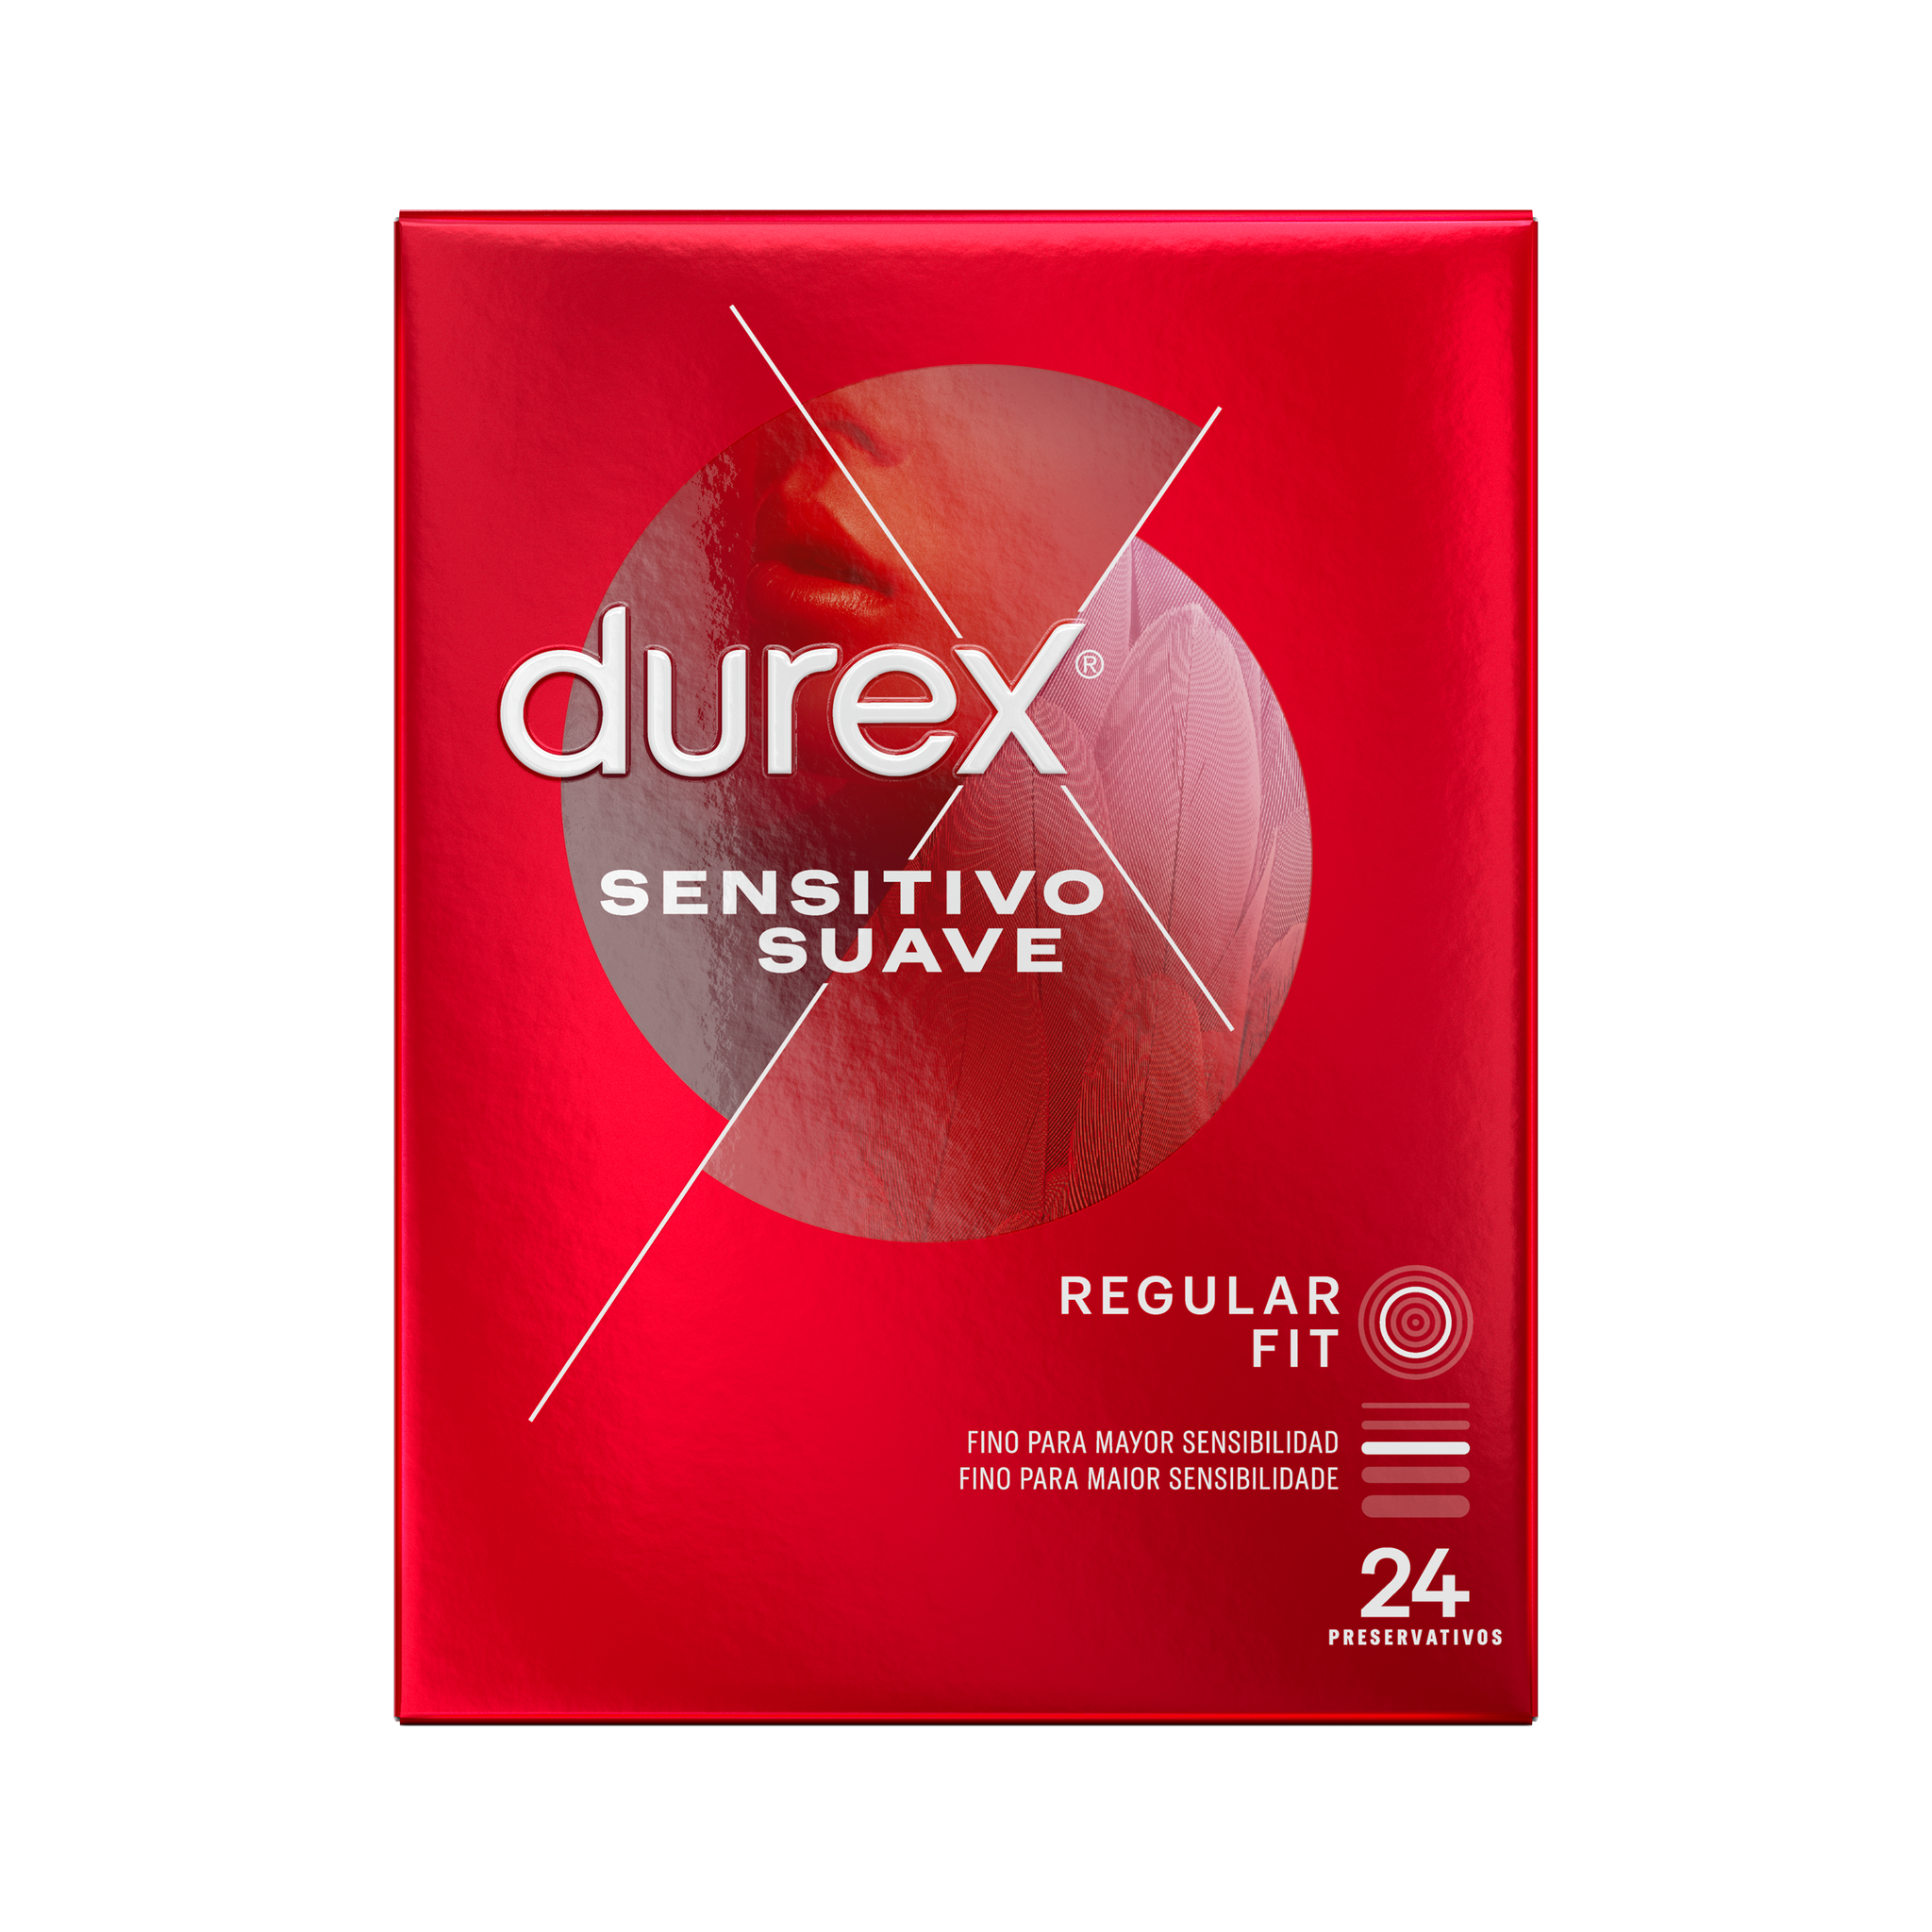 Durex ES Condoms Durex Preservativos Sensitivo Suave 24 unidades Condones